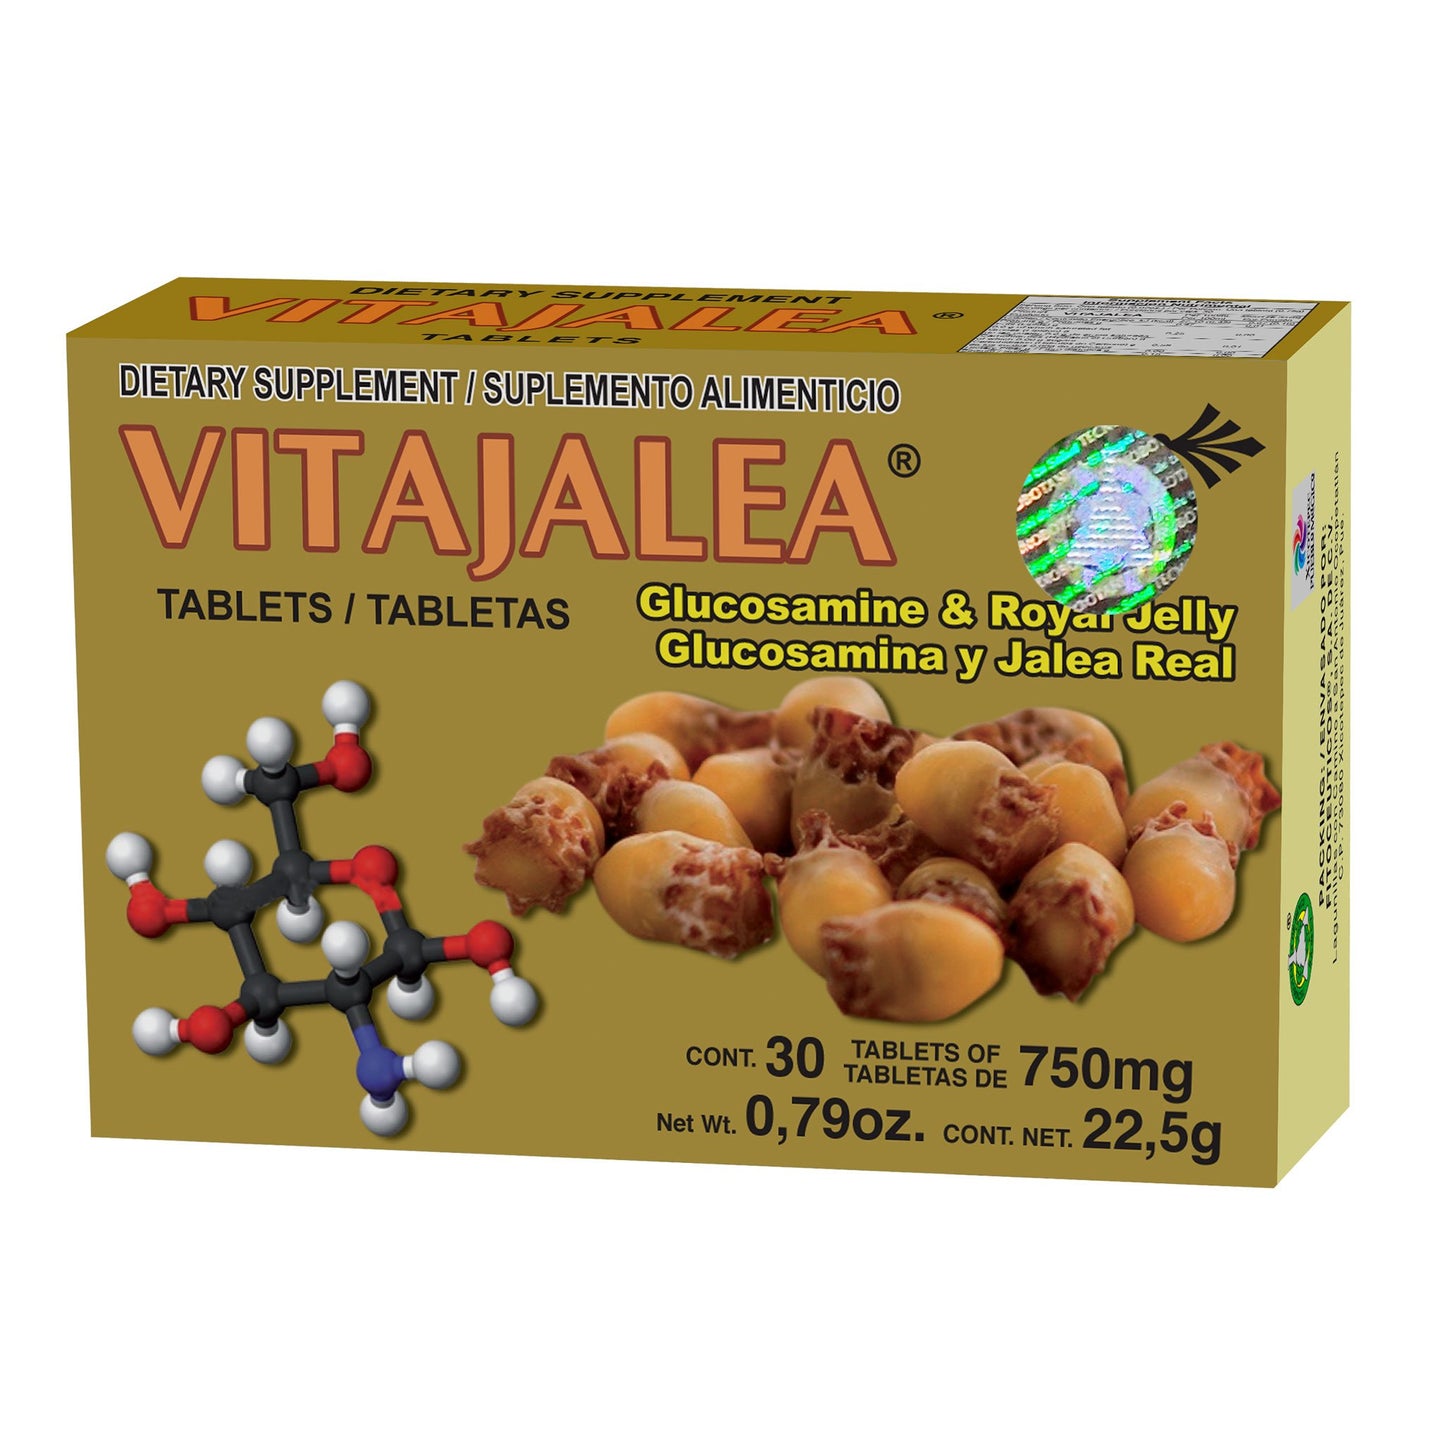 VITAJALEA ® 30 tabletas